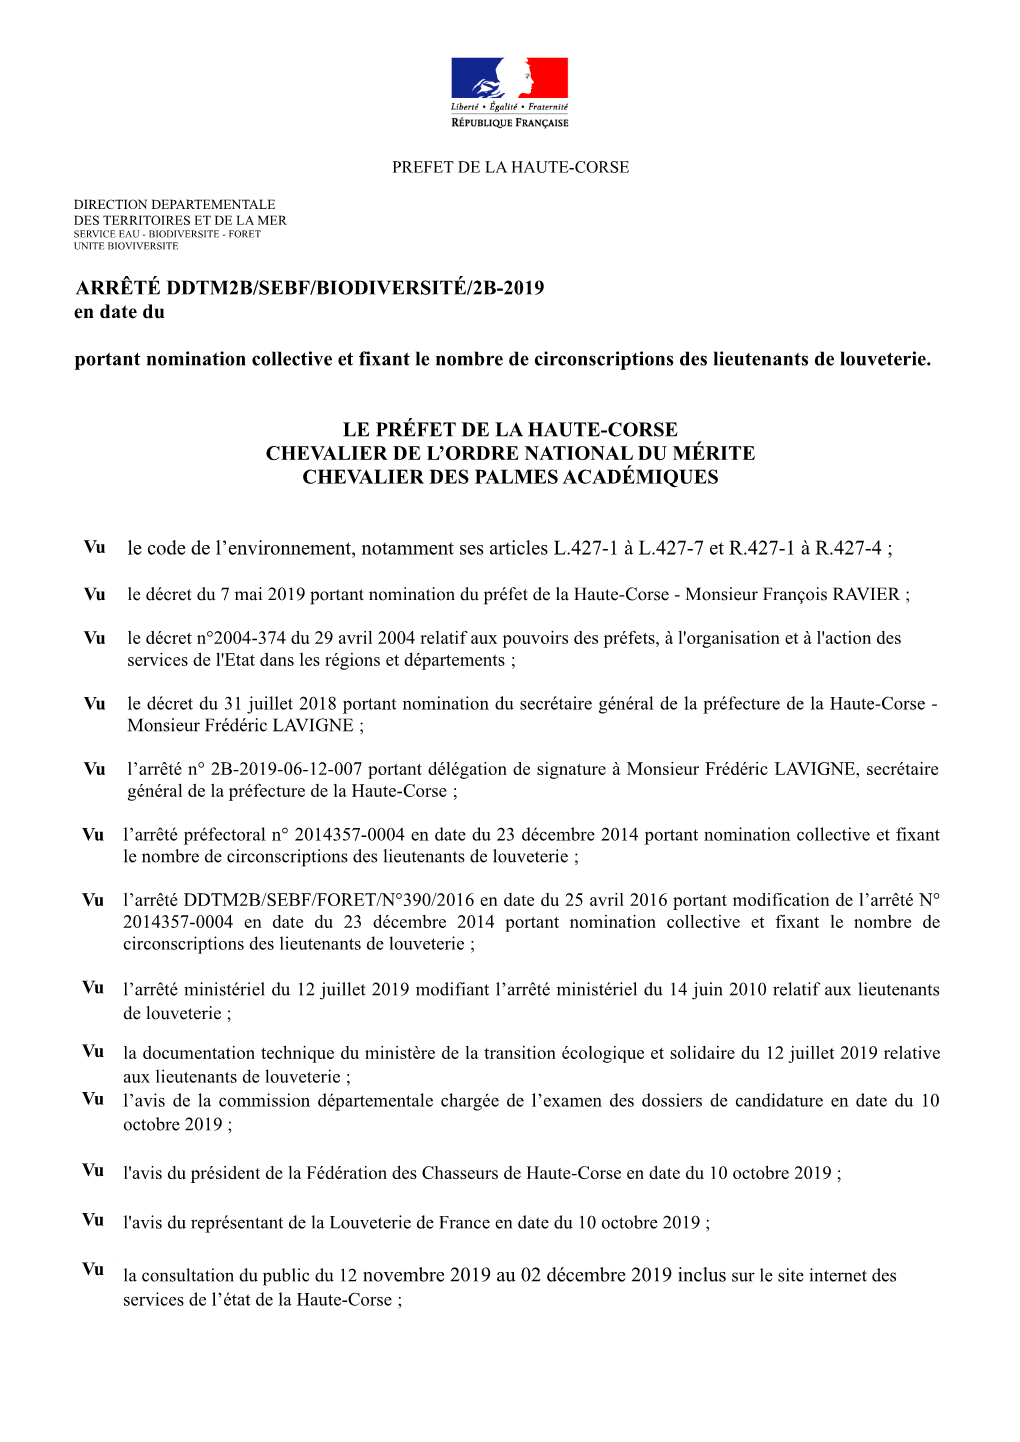 ARRÊTÉ DDTM2B/SEBF/BIODIVERSITÉ/2B-2019 En Date Du Portant Nomination Collective Et Fixant Le Nombre De Circonscriptions Des Lieutenants De Louveterie